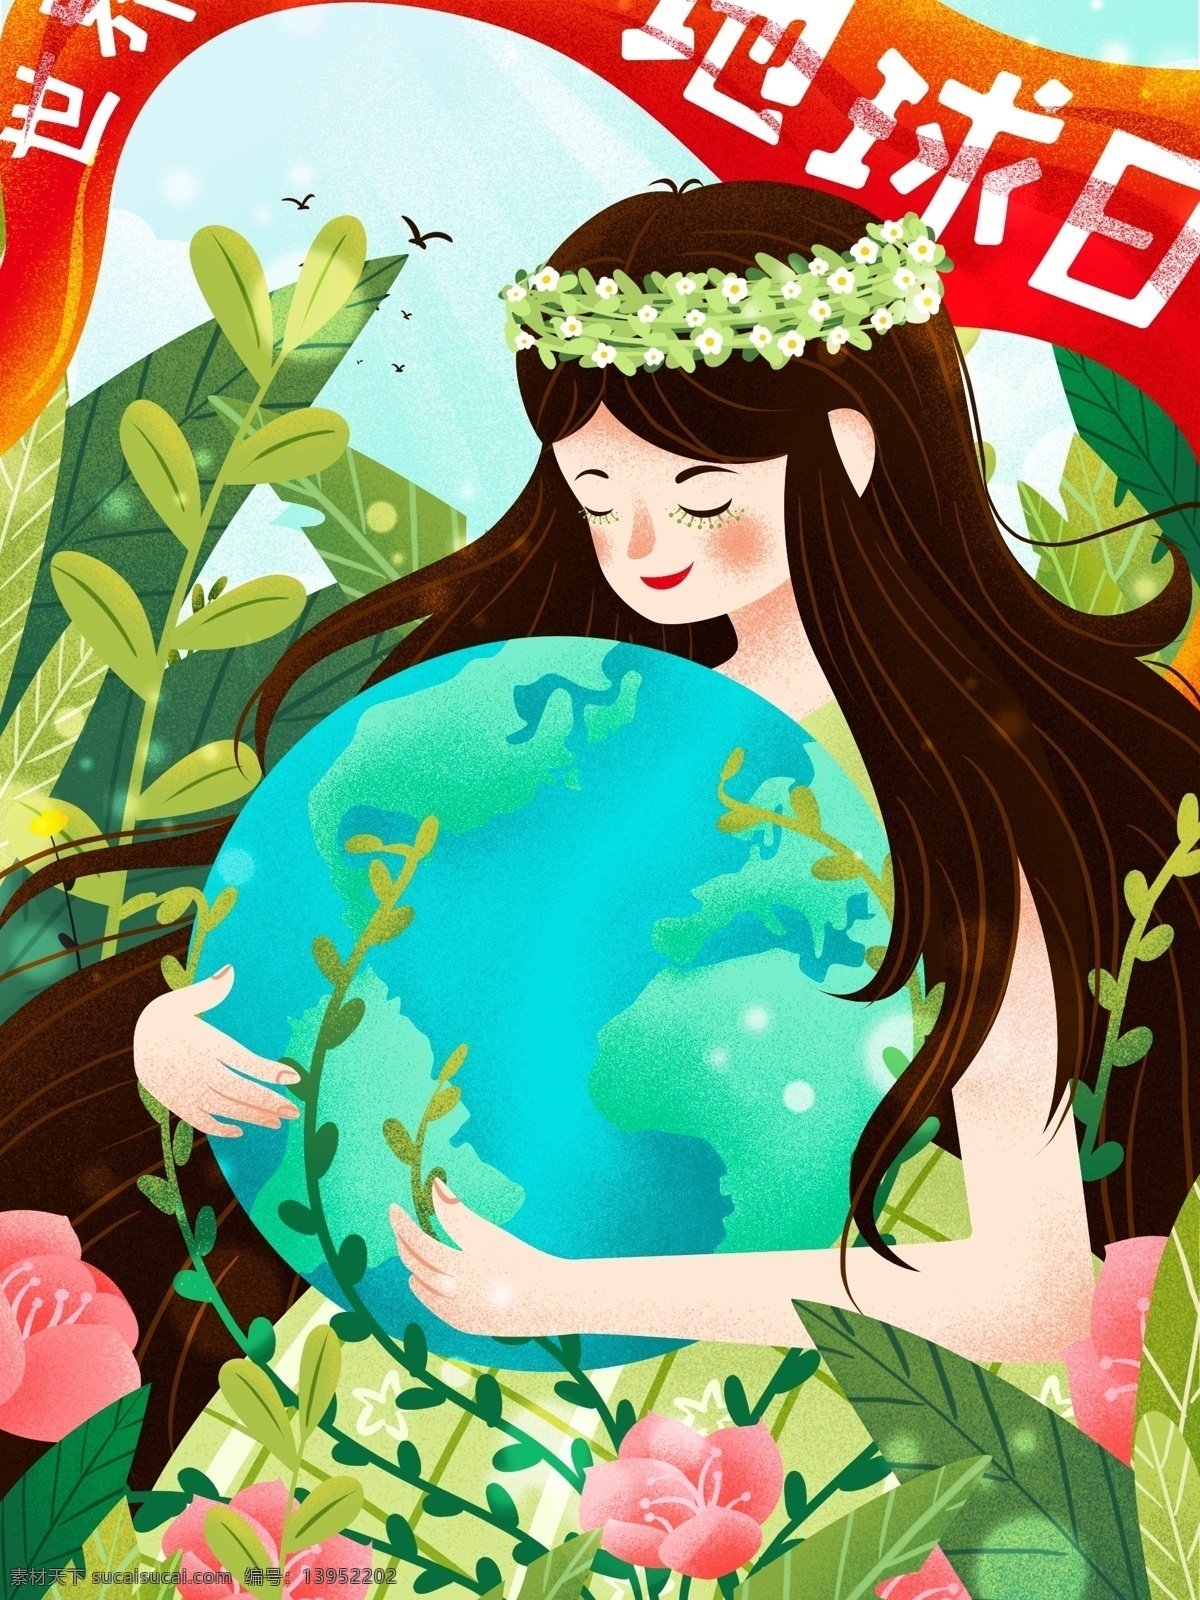 地球日 环保 创意 插画 森系 手绘插画 促销 宣传海报 微信 手机 配图 环保公益 植物 绿色环保 大自然 动漫动画